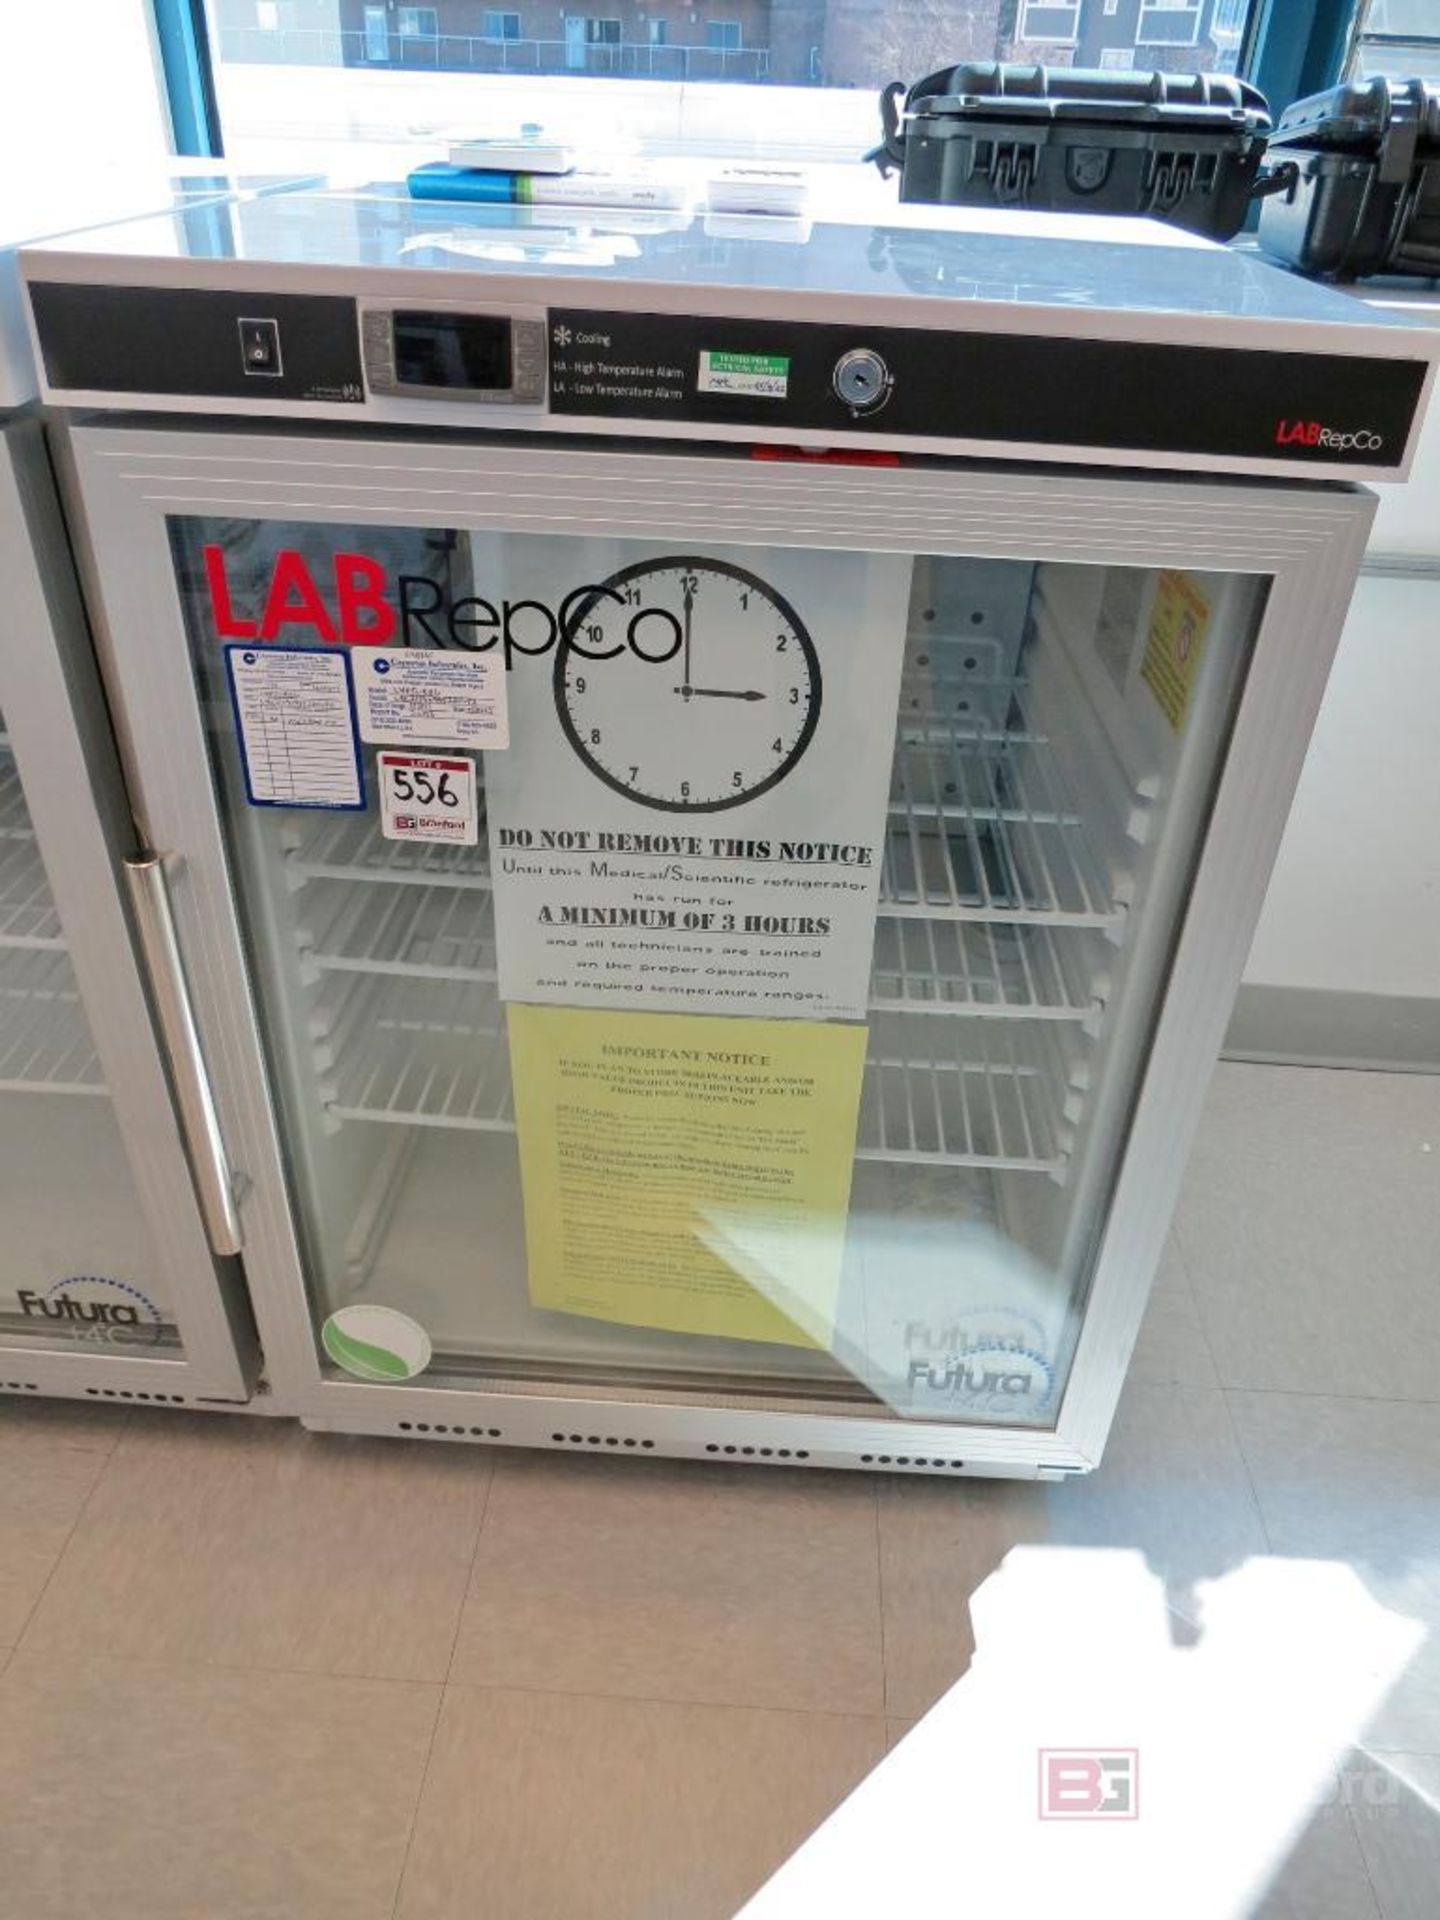 LabRepCo LHP-5-URBG Futura +4°C Glass Door Refrigerator